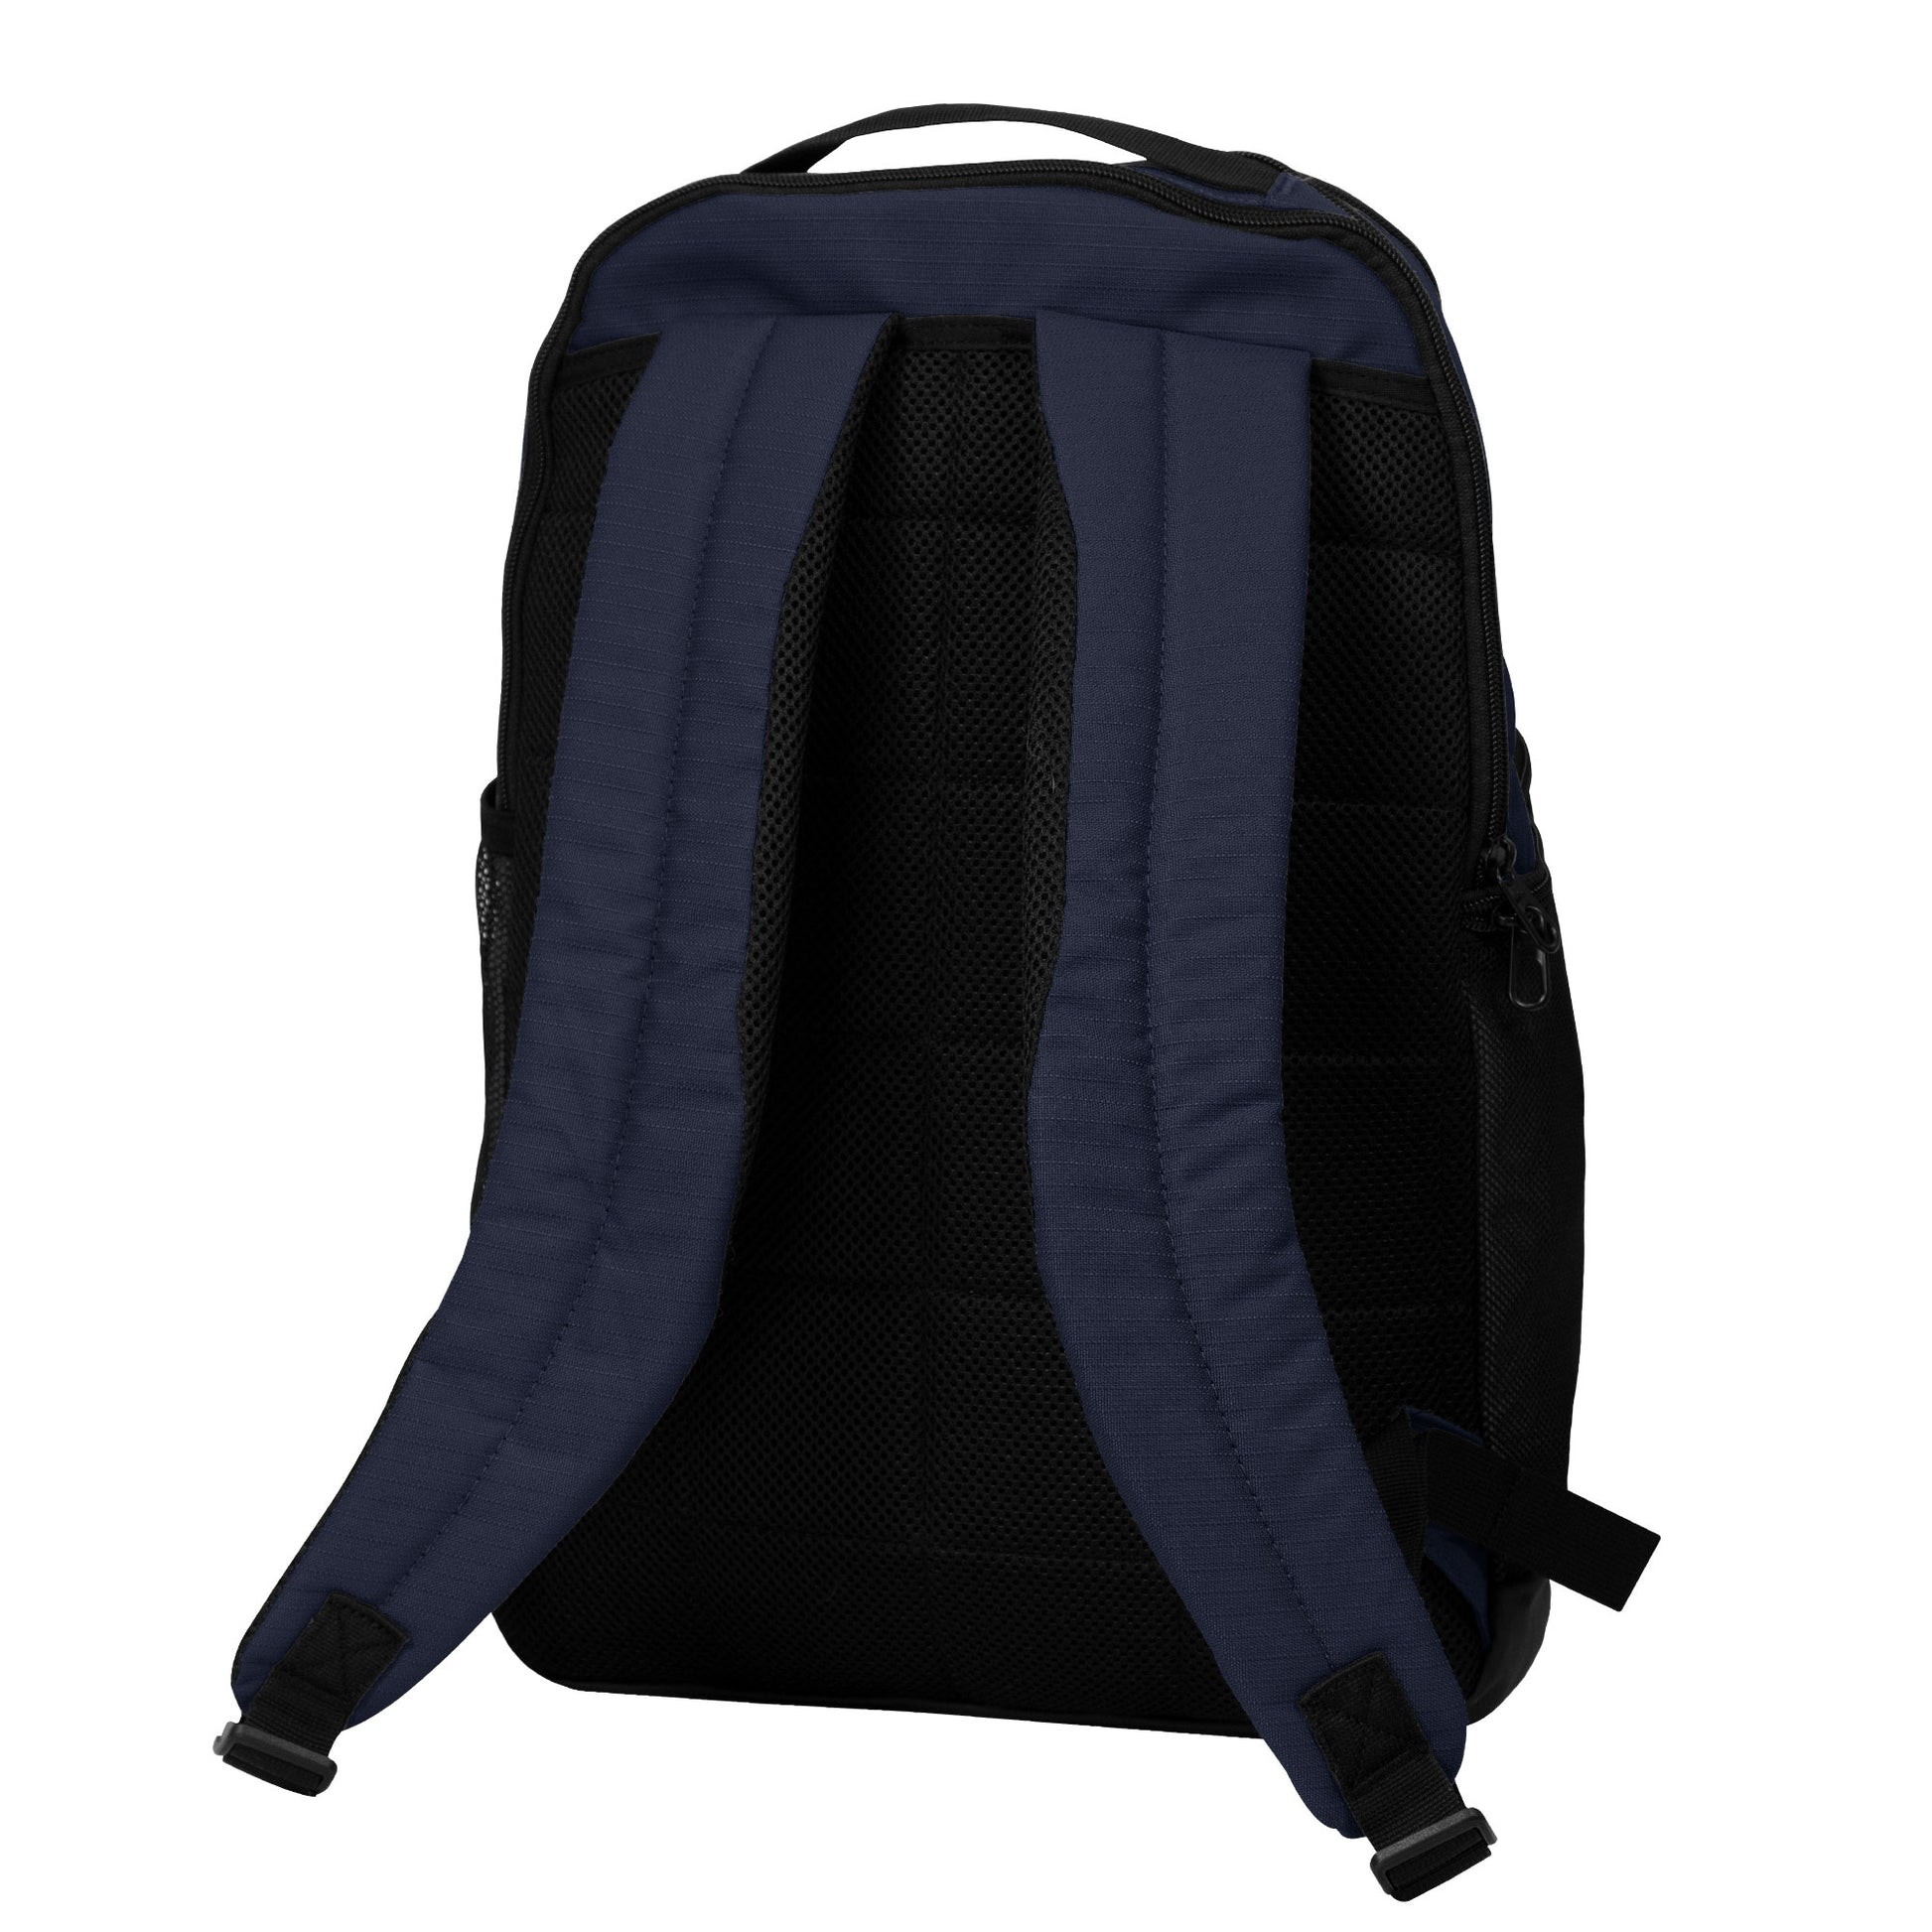 Nike Brasilia (Extra-Large) Training Backpack Lacrosse Bags